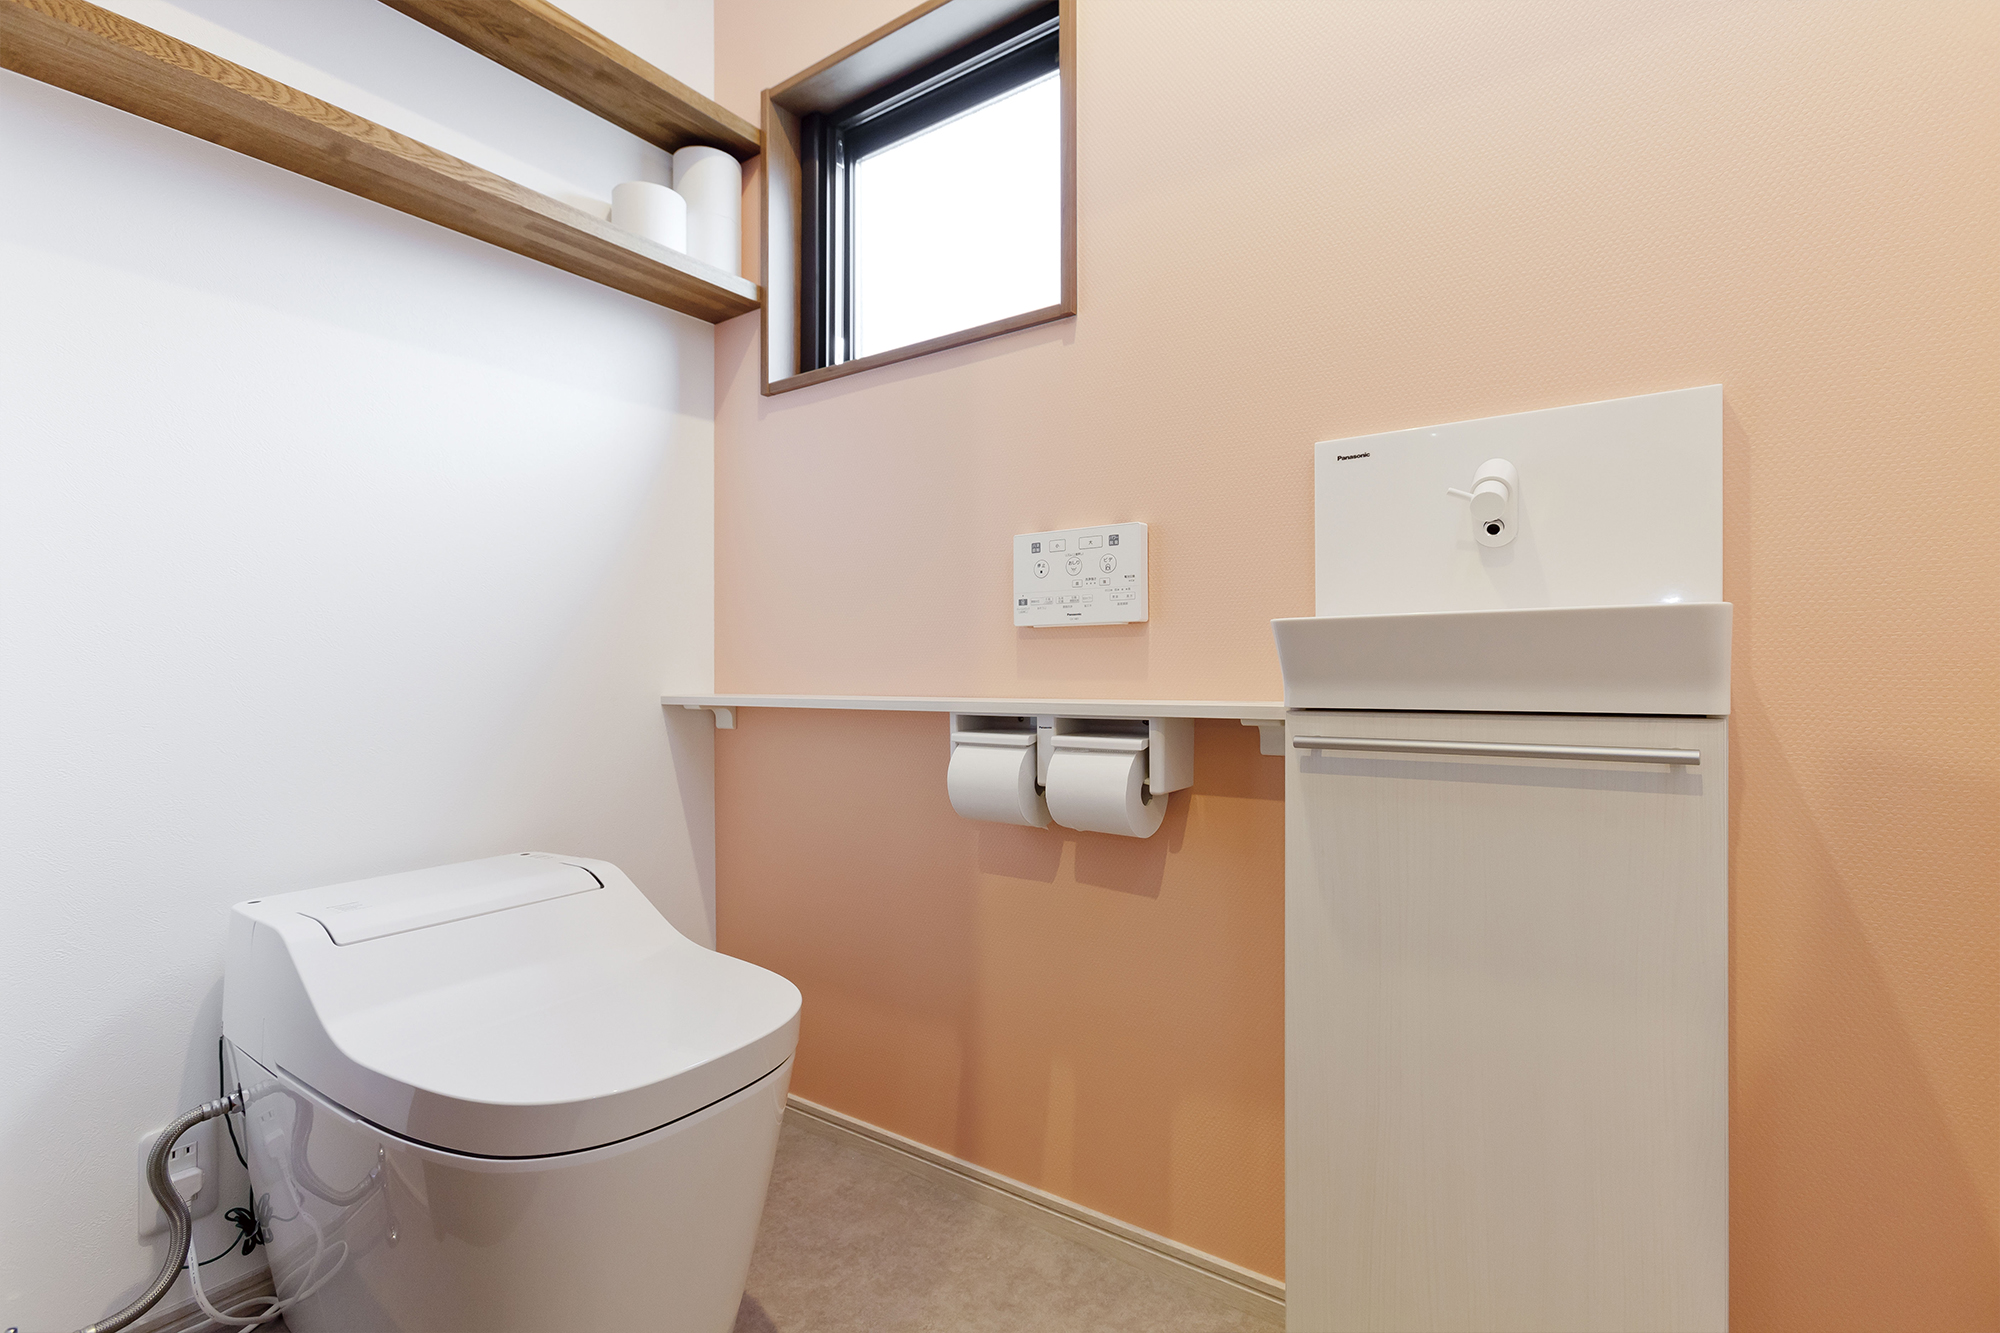 トイレは広めに設計。スペースに余裕があるため掃除もしやすいとか。「建築家の先生に相談して、玄関から直接見えない配置にしてもらいました」。明るいピンクの壁紙で優しい雰囲気に。